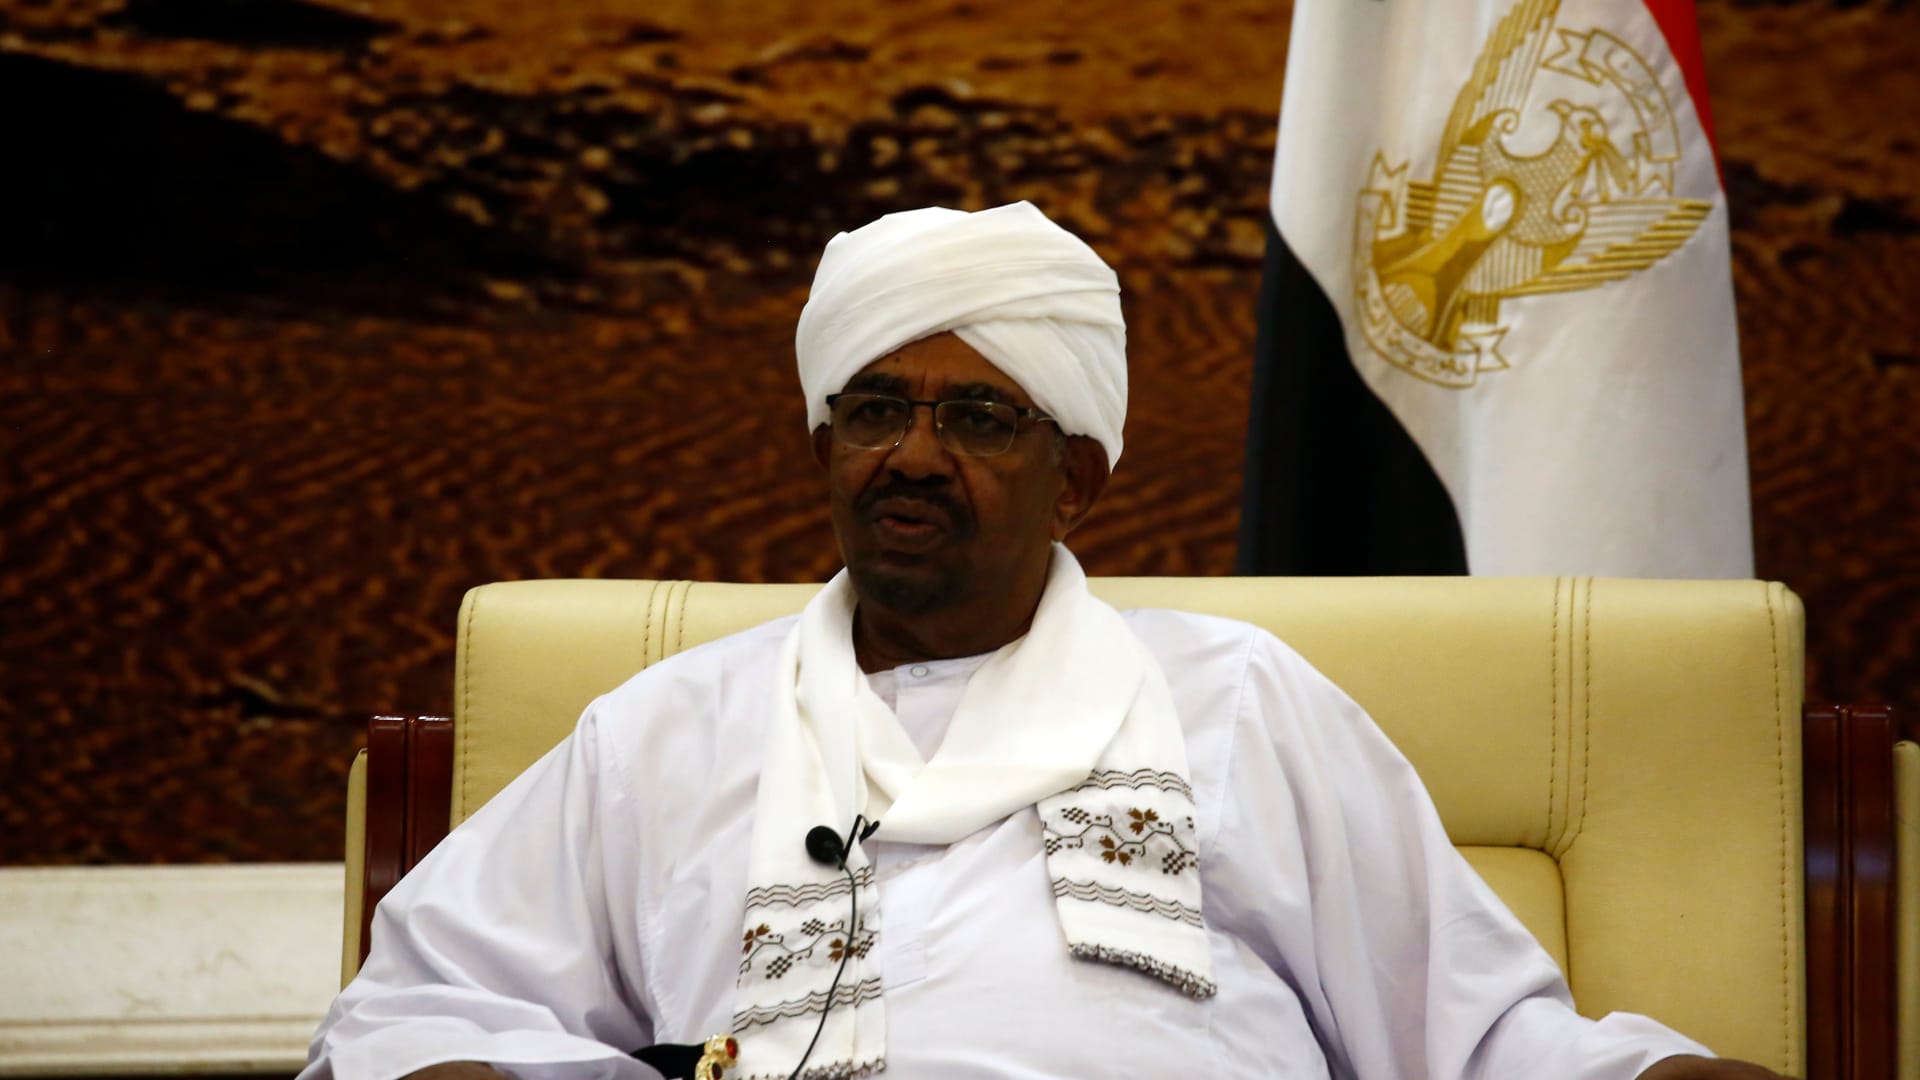 الرئيس السوداني يلغي جميع مهرجانات السياحة والتسوق..فما السبب؟